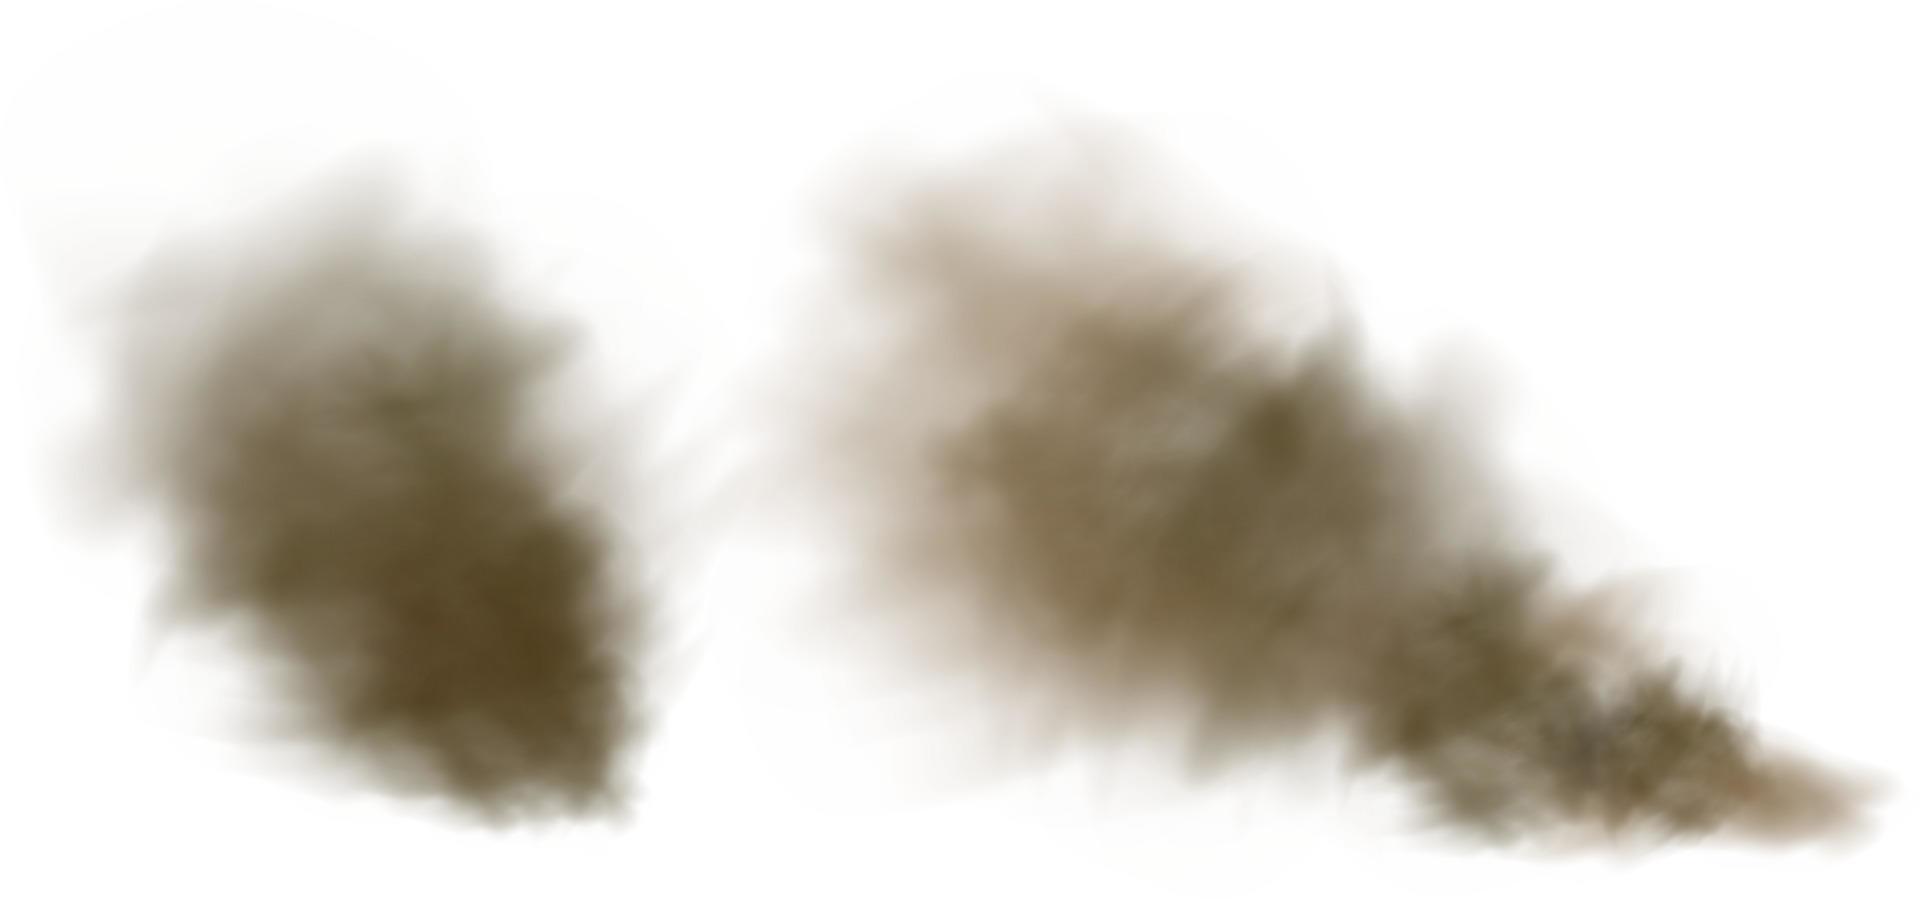 hintergrund einer wolke aus braunem staub und sand mit partikeln aus fliegendem trockenem sand und schmutz. vektor